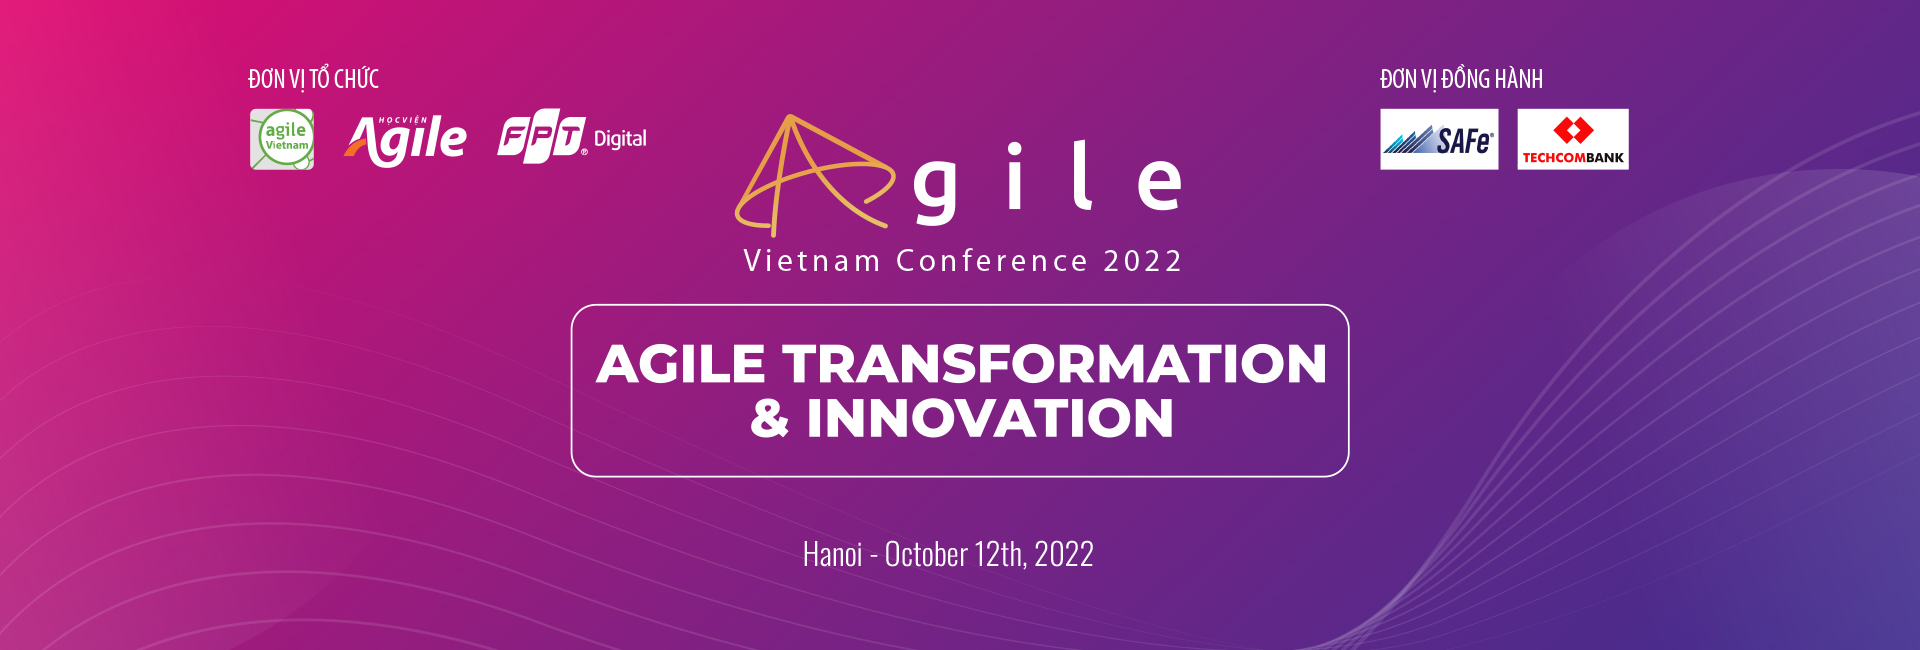 Giám đốc FPT Digital chia sẻ về chuyển đổi số và sáng tạo tại hội nghị Agile Vietnam